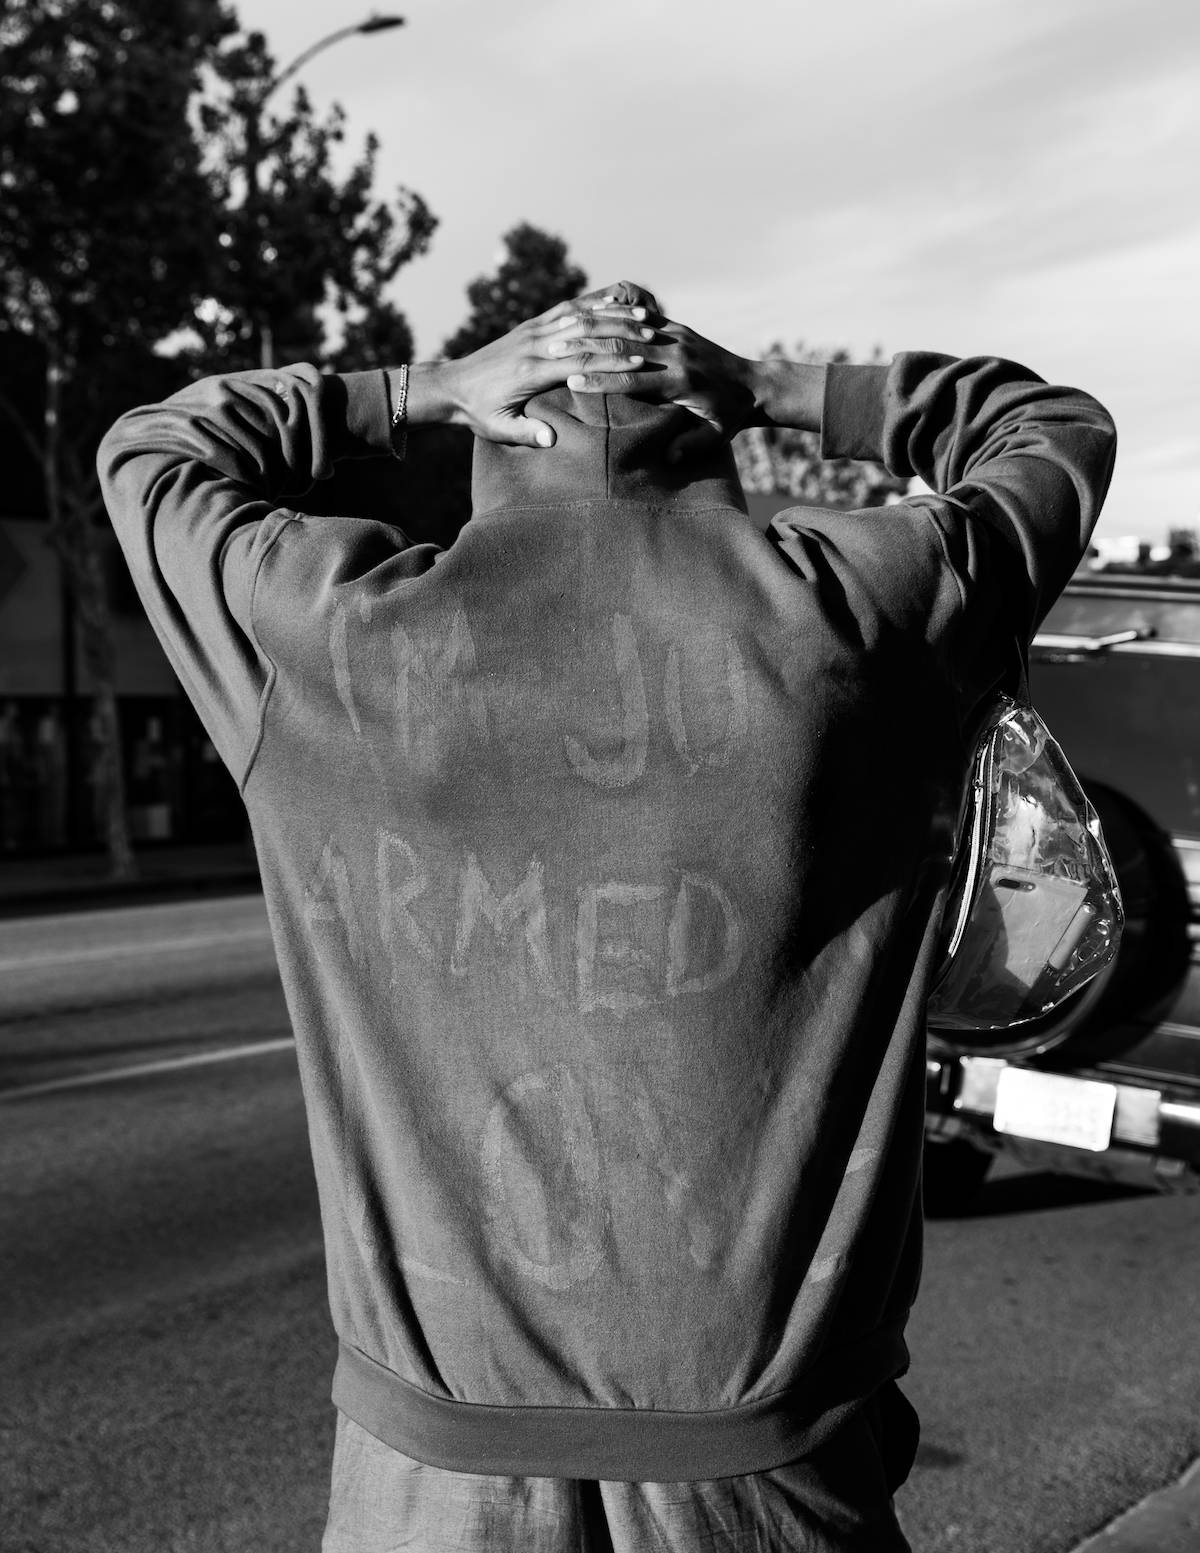 30 maja 2020 r. Pokojowy protestant w bluzie z napisem „Jestem uzbrojony tylko w miłość”, Los Angeles (Fot. Alexis Hunley)